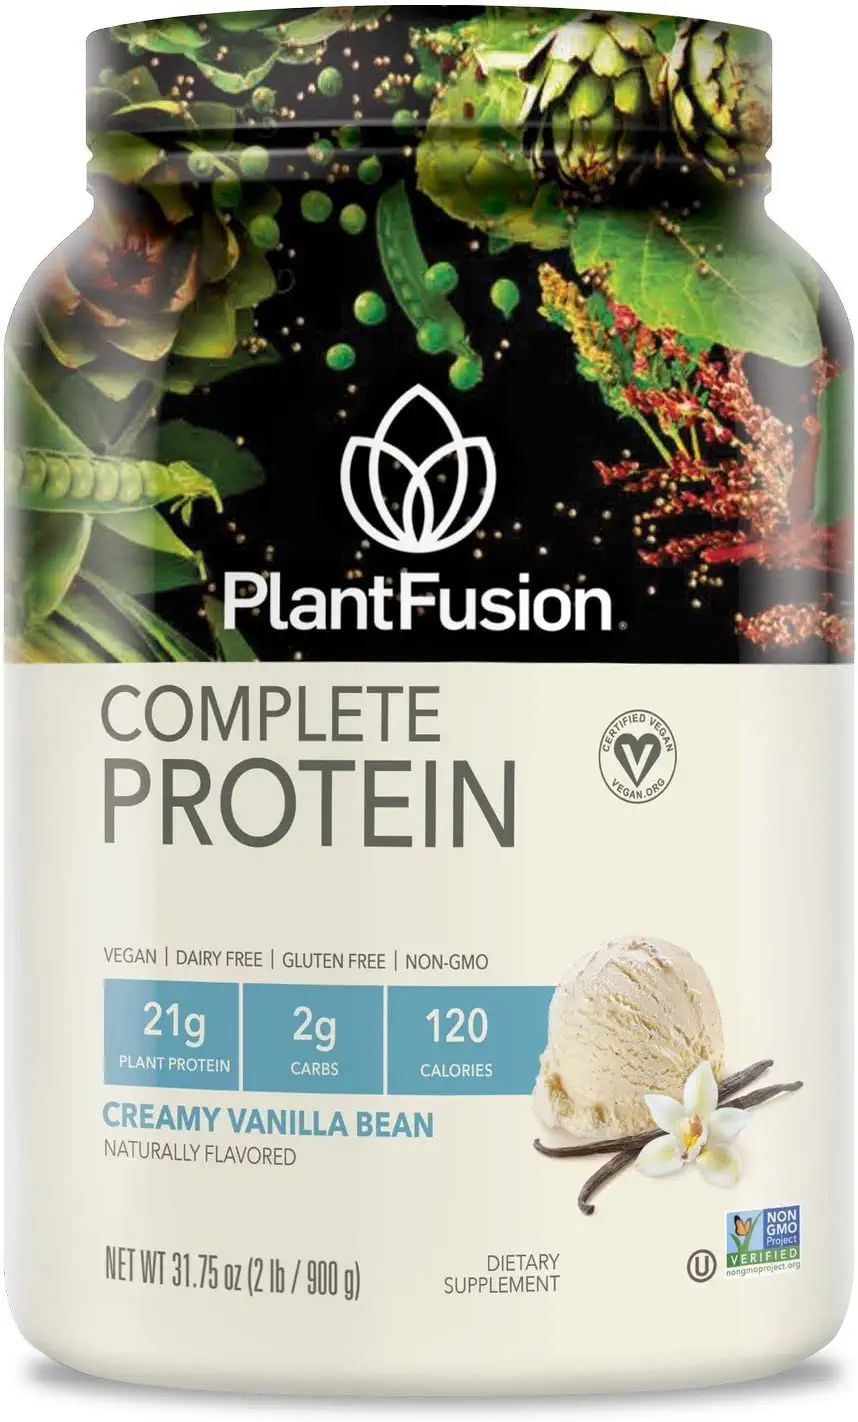 PlantFusion Vegan Protein Powder